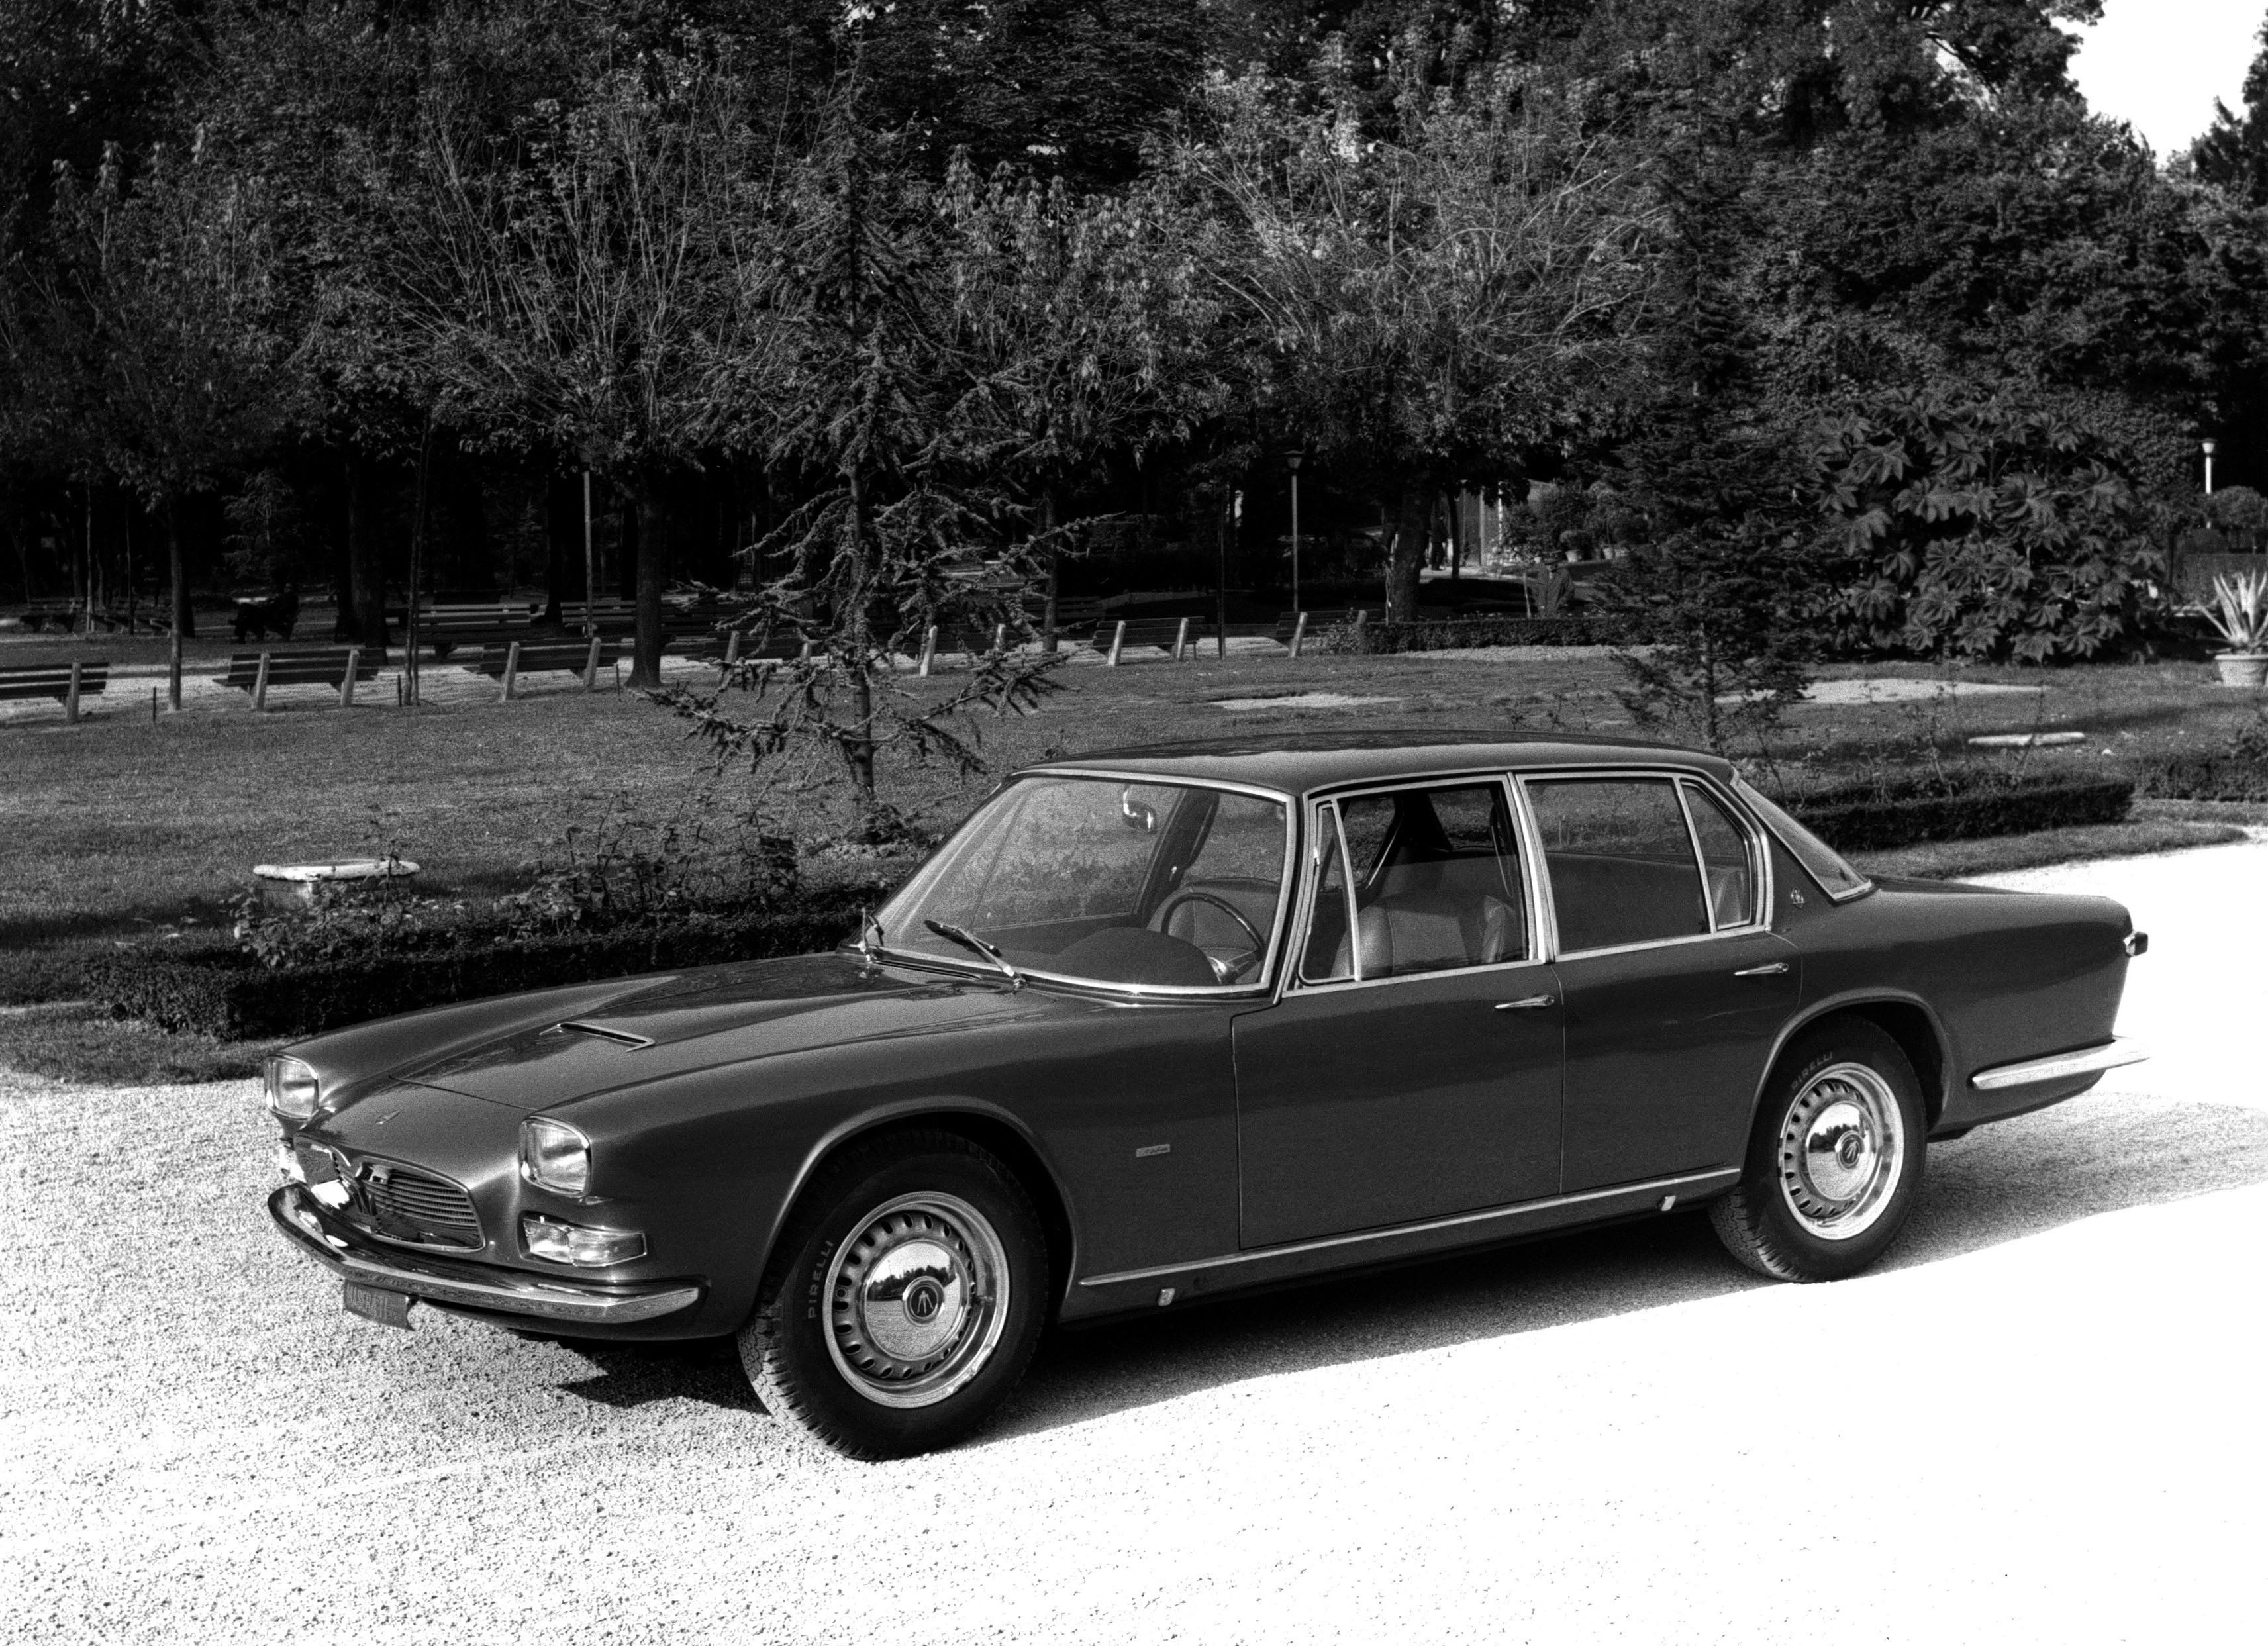 ТОП-5 любимых автомобилей Брежнева из личной коллекции